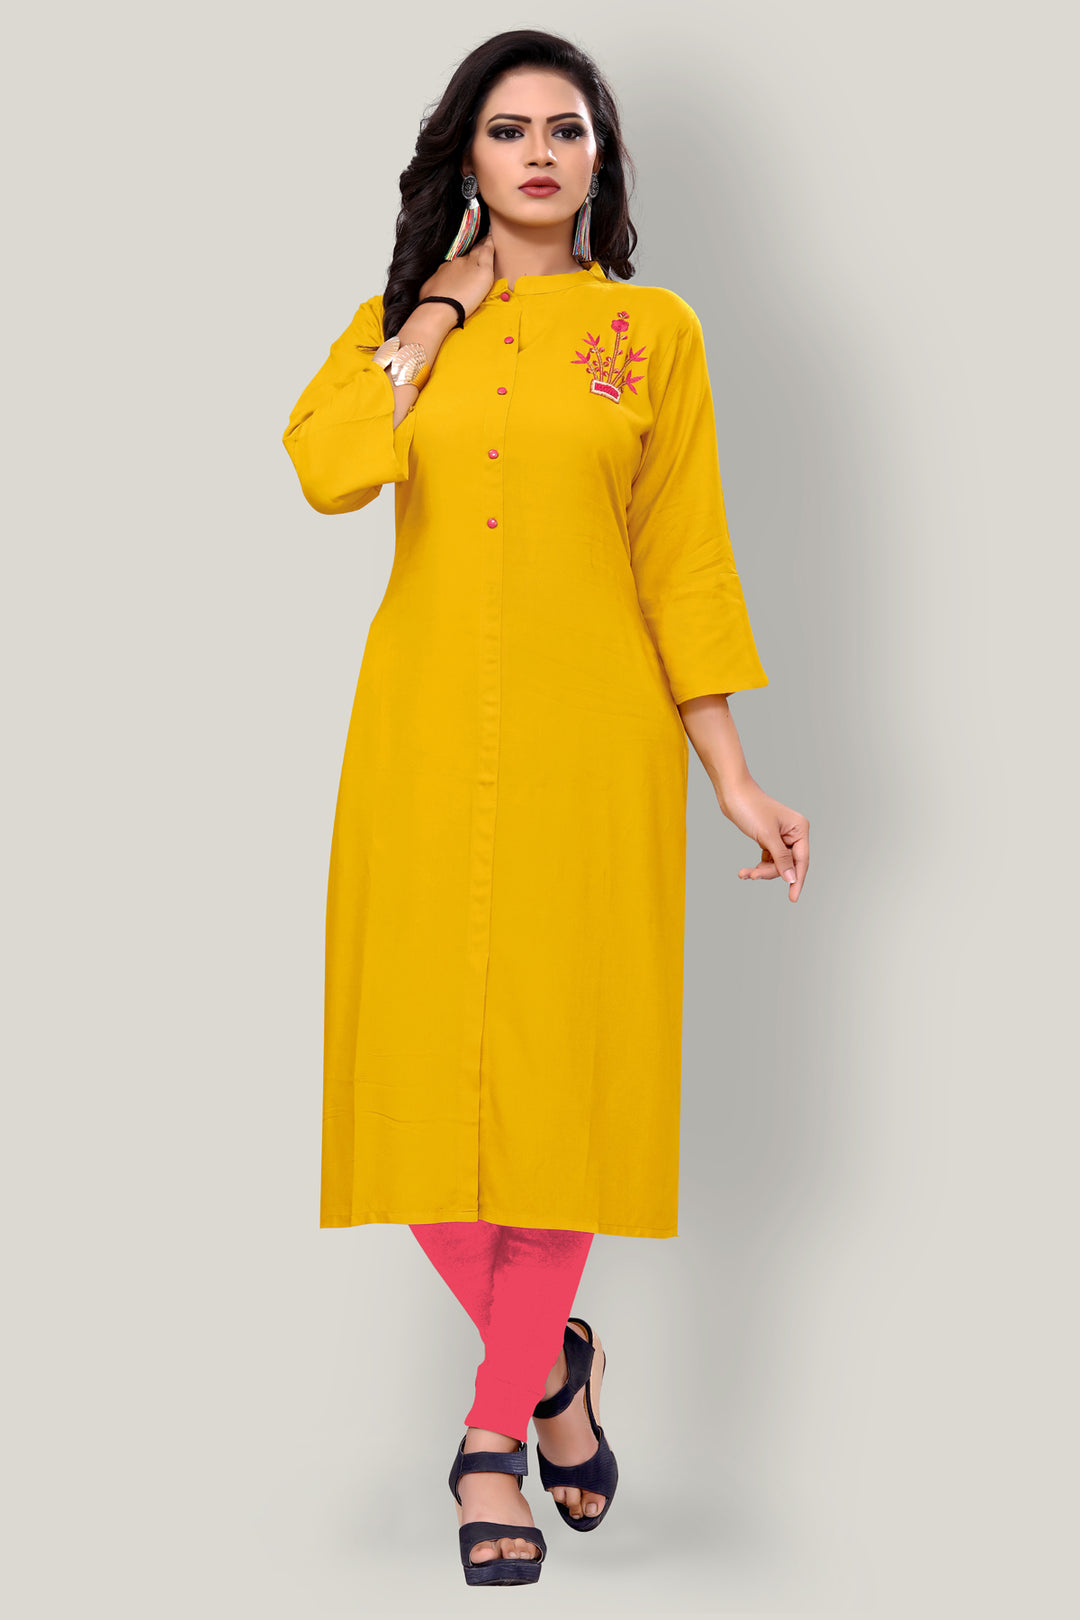 Buy Designer Yellow kurti with stylish handwork